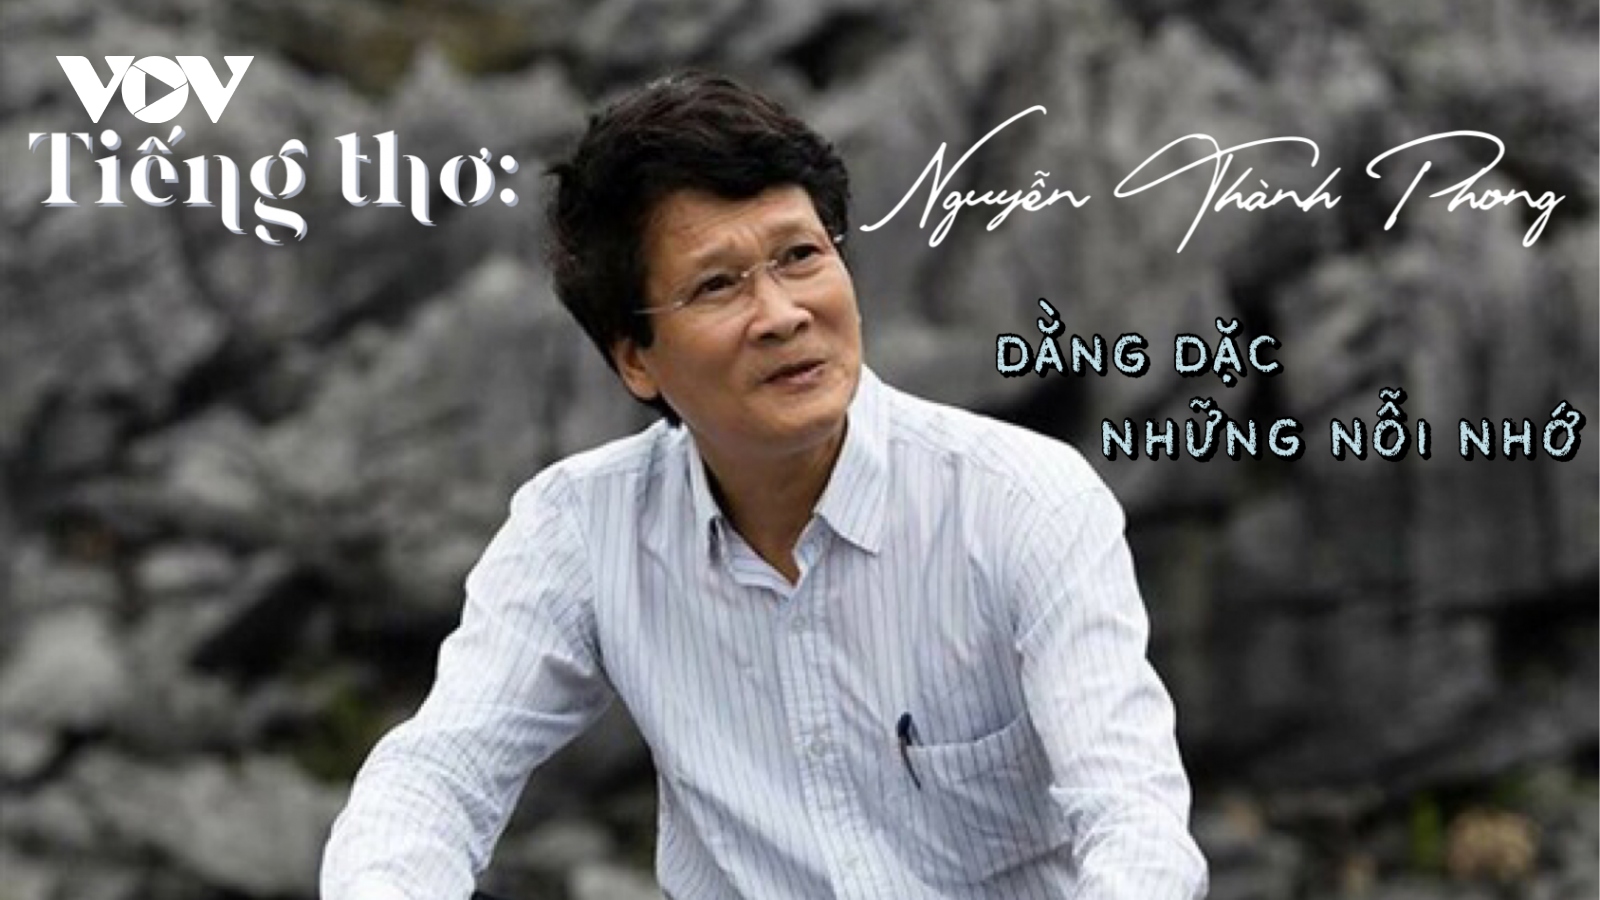 Thơ Nguyễn Thành Phong: Dằng dặc những nỗi đời